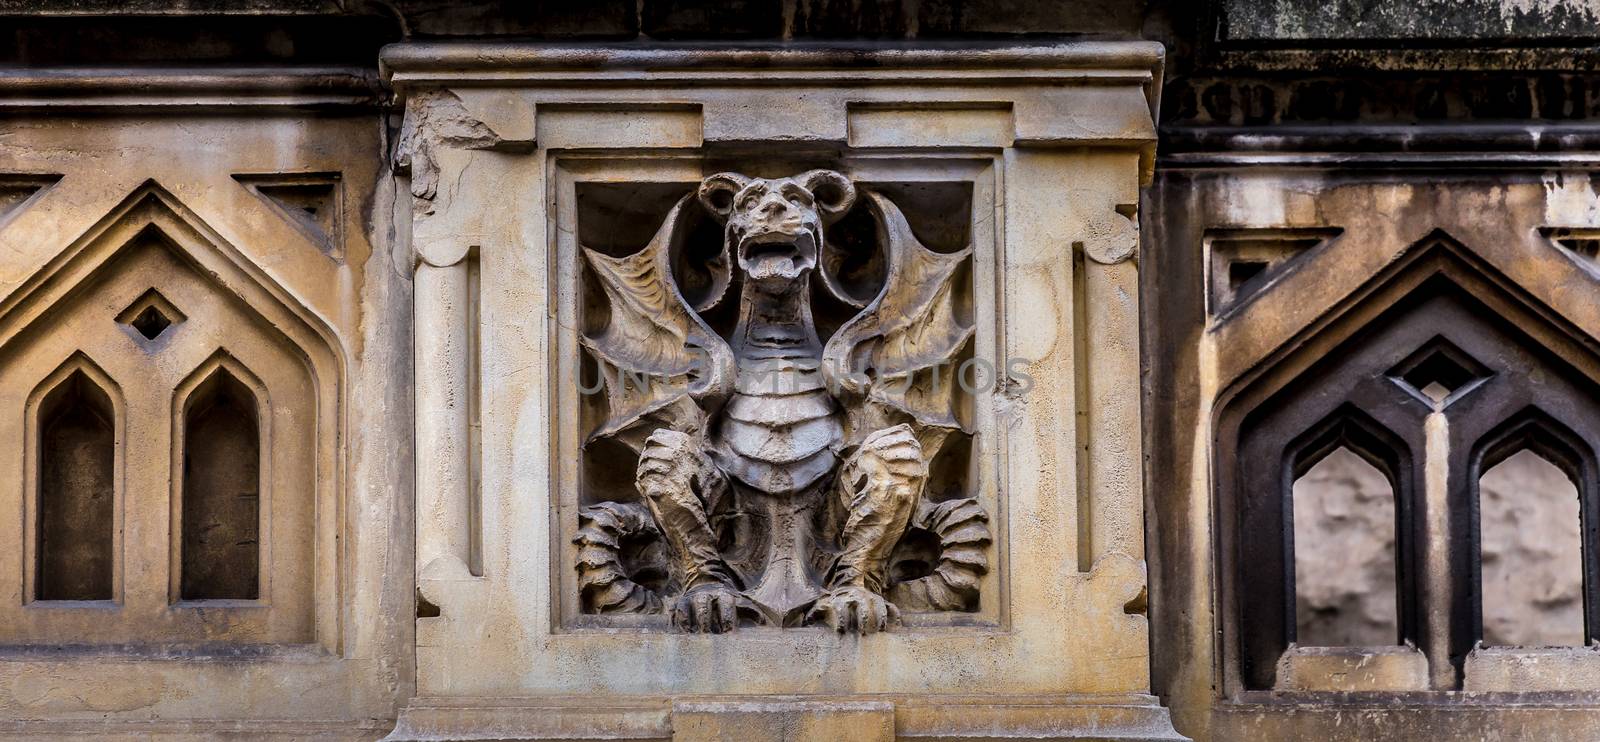 Turin, Corso Francia, Casa dei Draghi/Palazzo della Vittoria von Gottardo Gussoni (art nouveau house). Dragon detail on the facade.